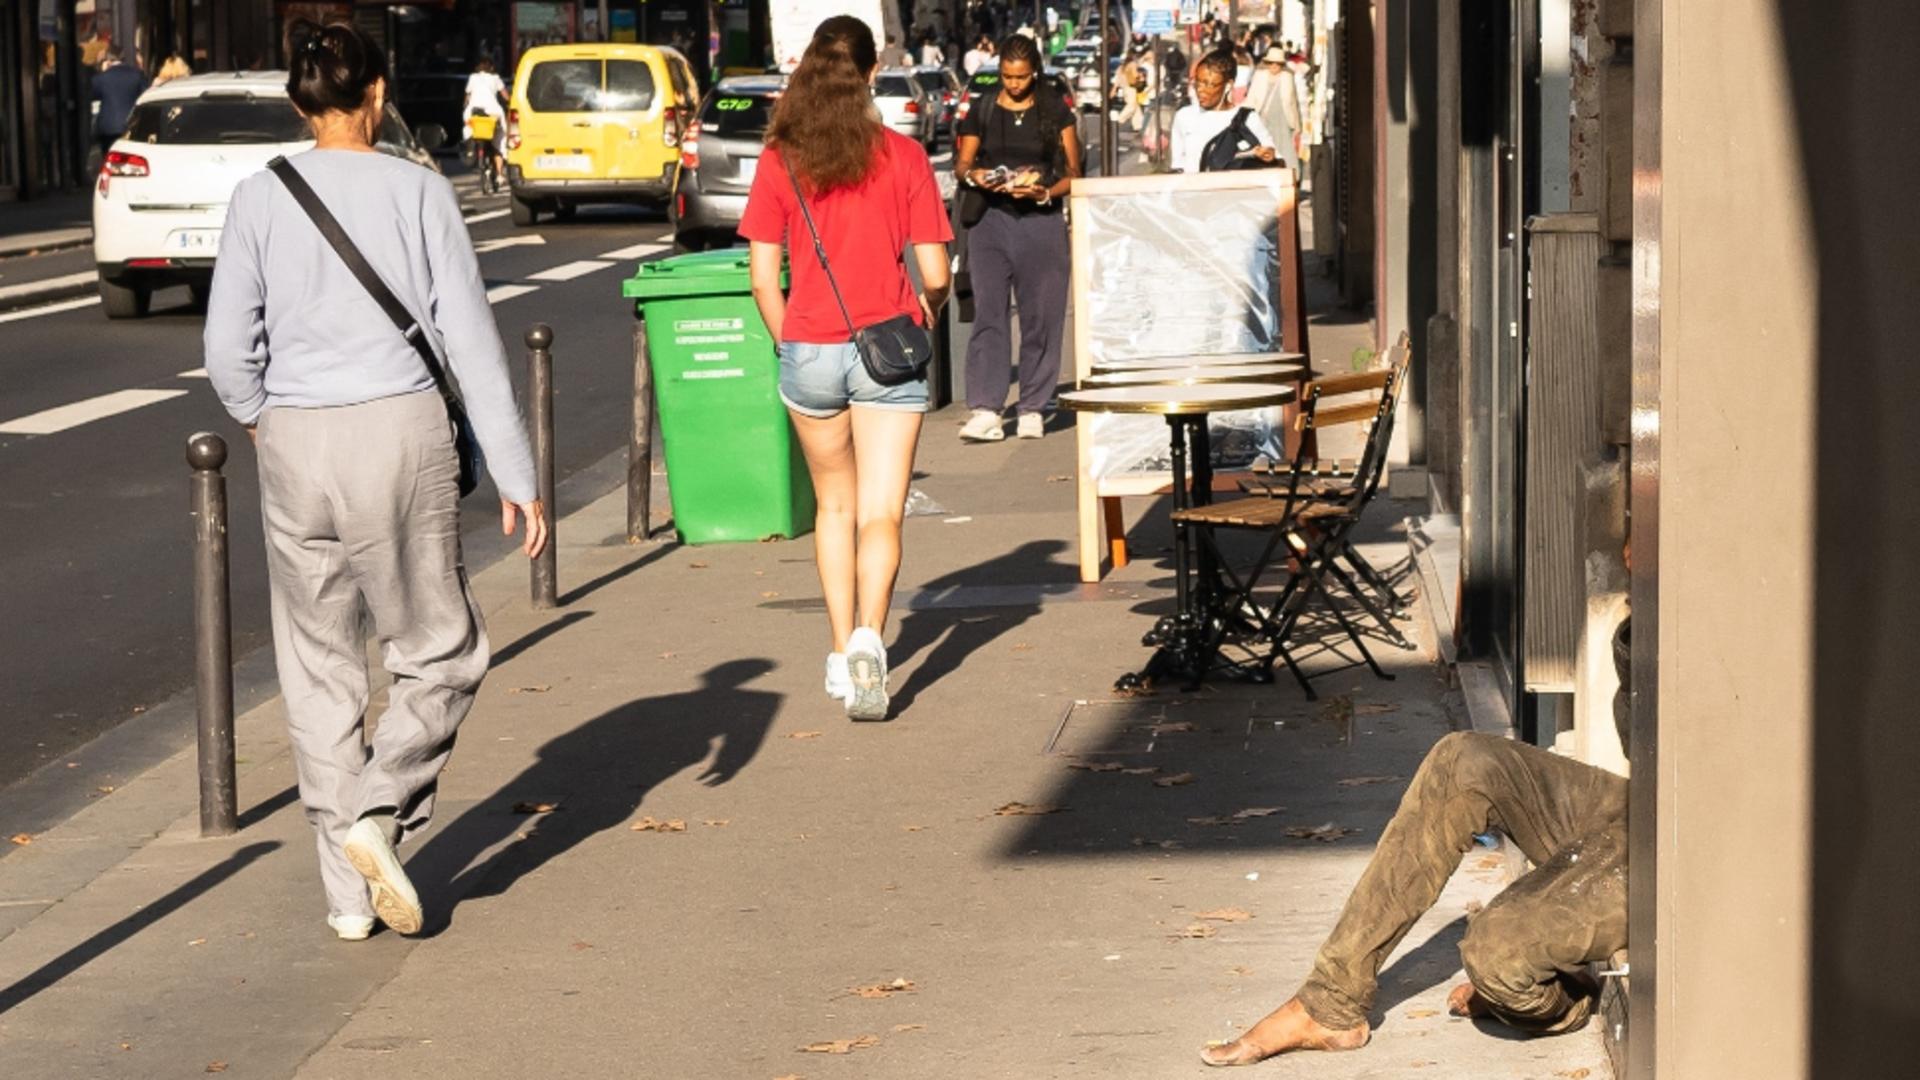 Ca să arate bine pentru Jocurile Olimpice, Parisul a început să mute oamenii fără adăpost de pe străzi. Foto: Profimedia